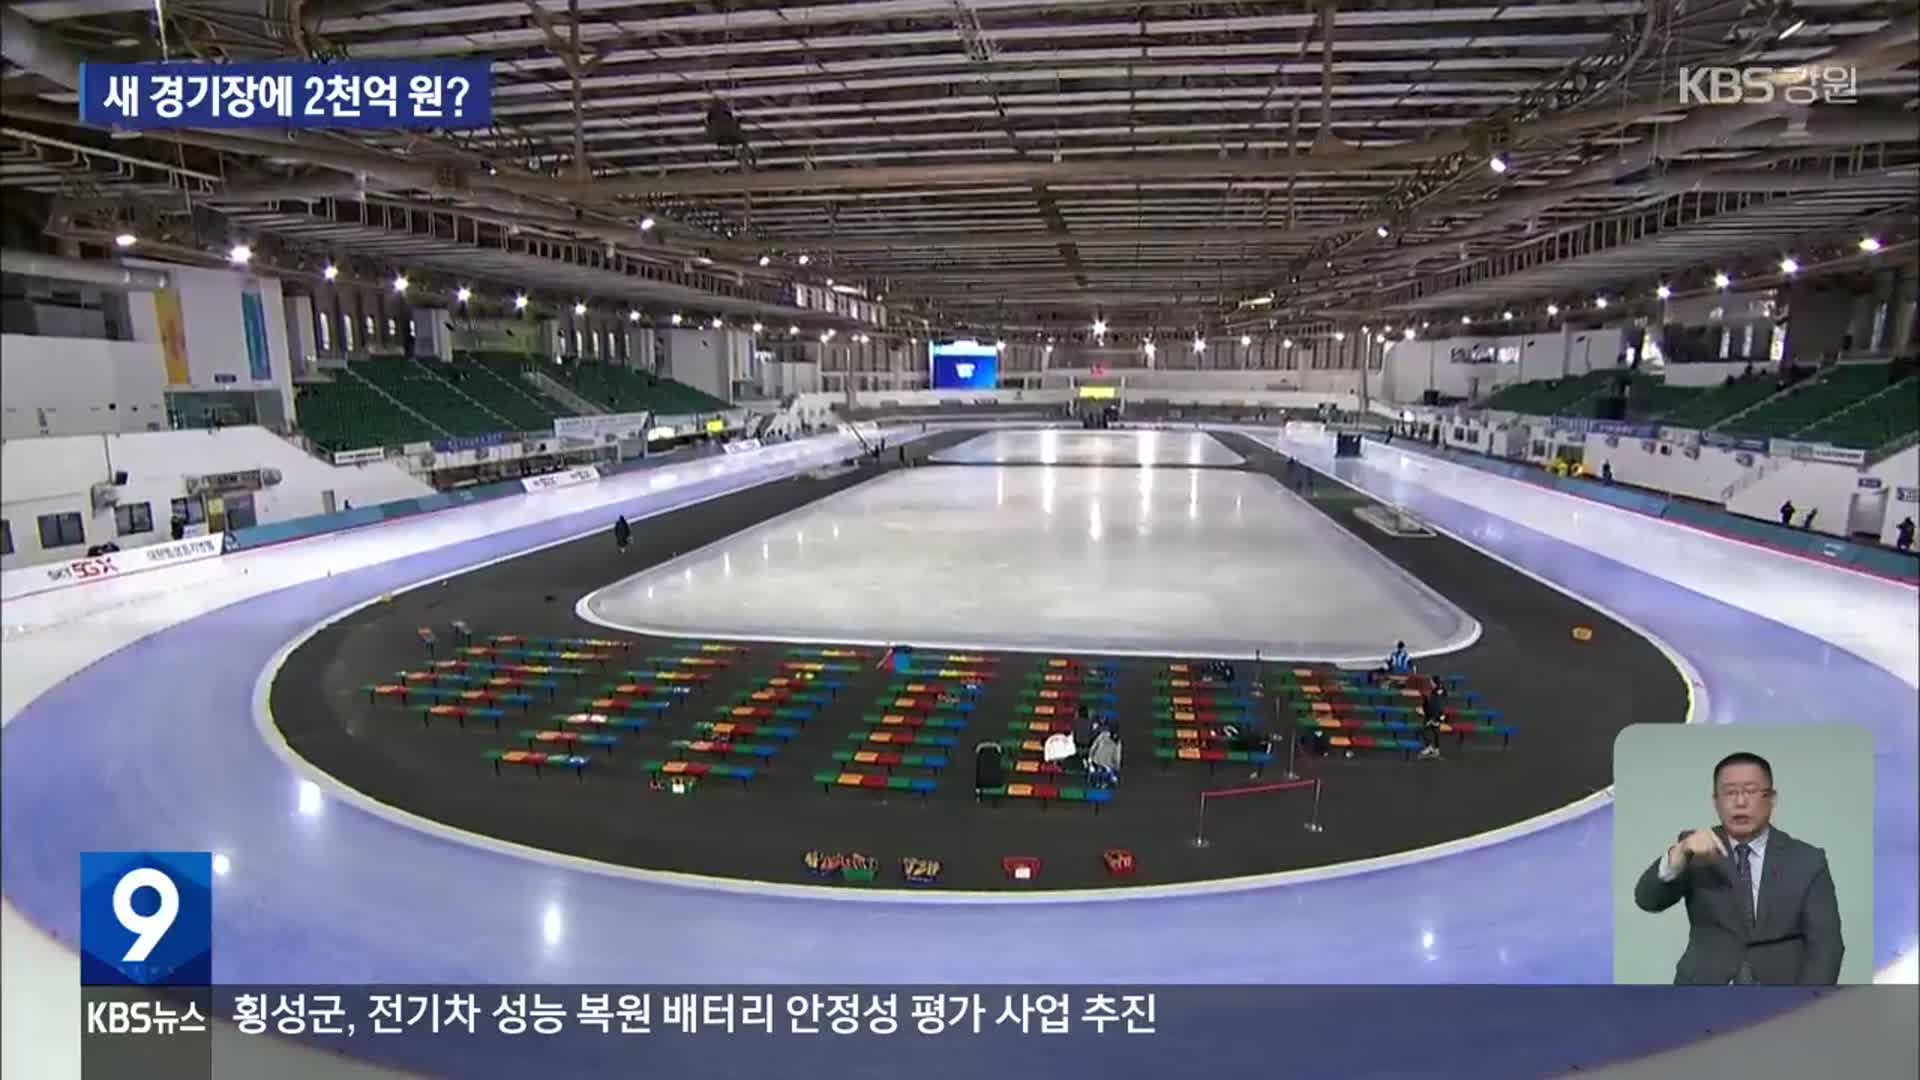 멀쩡한 스케이트장 외면하고 새 경기장?…사업비만 2천억 원!